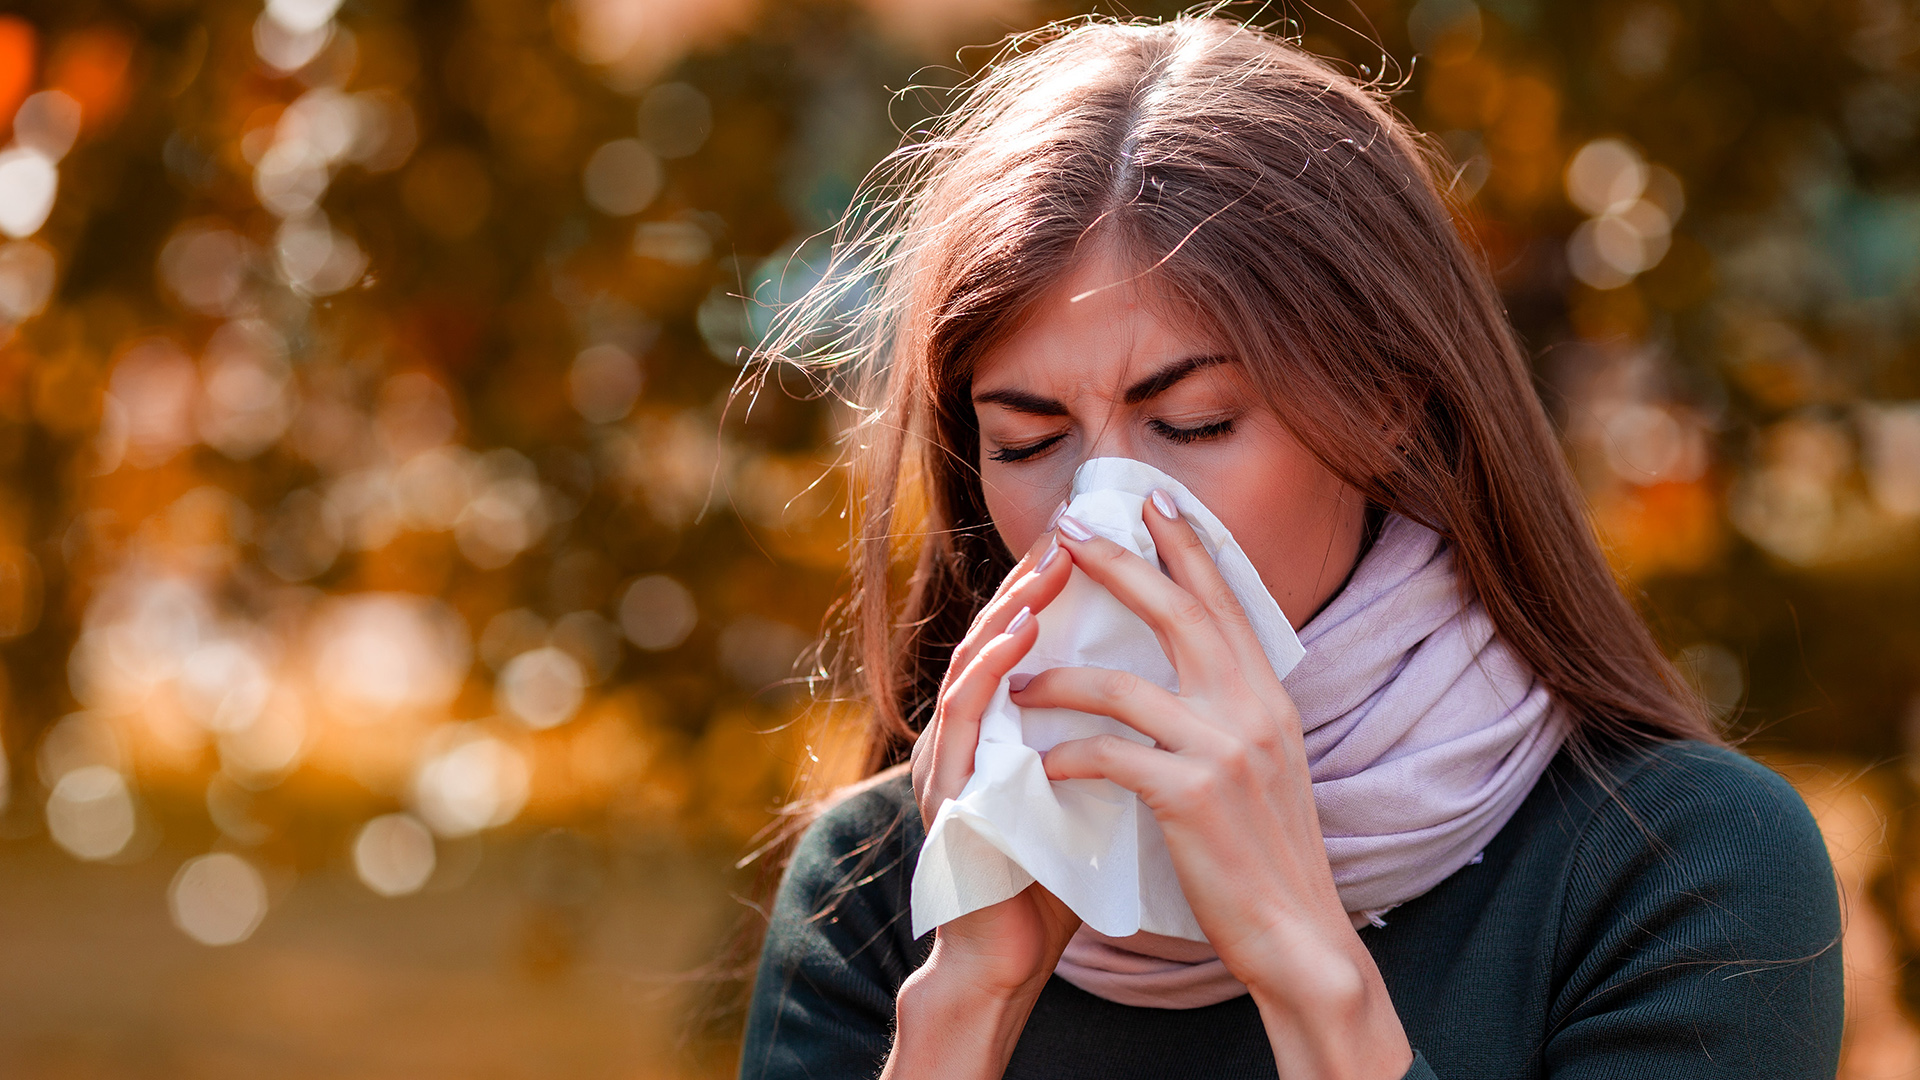 El sistema inmunológico, en especial el de las personas alérgicas, reacciona de manera exagerada y descontrolada ante alérgenos del ambiente (Shutterstock)